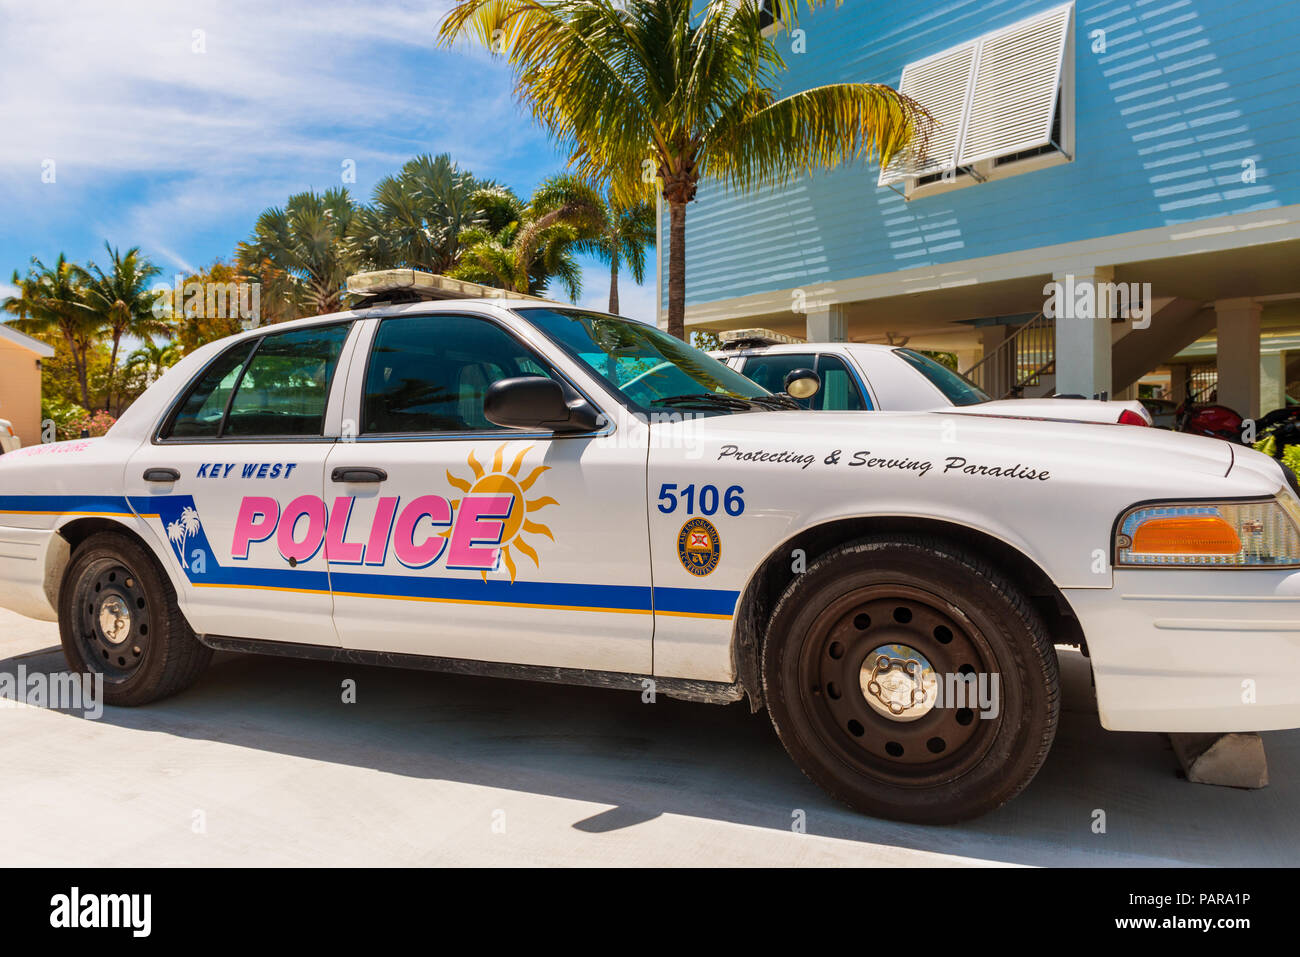 Key West auto della polizia in poco tasto torcia, Florida Keys, Florida, Stati Uniti d'America, la tagline sulla vettura dice "proteggere e servire il paradiso". Foto Stock